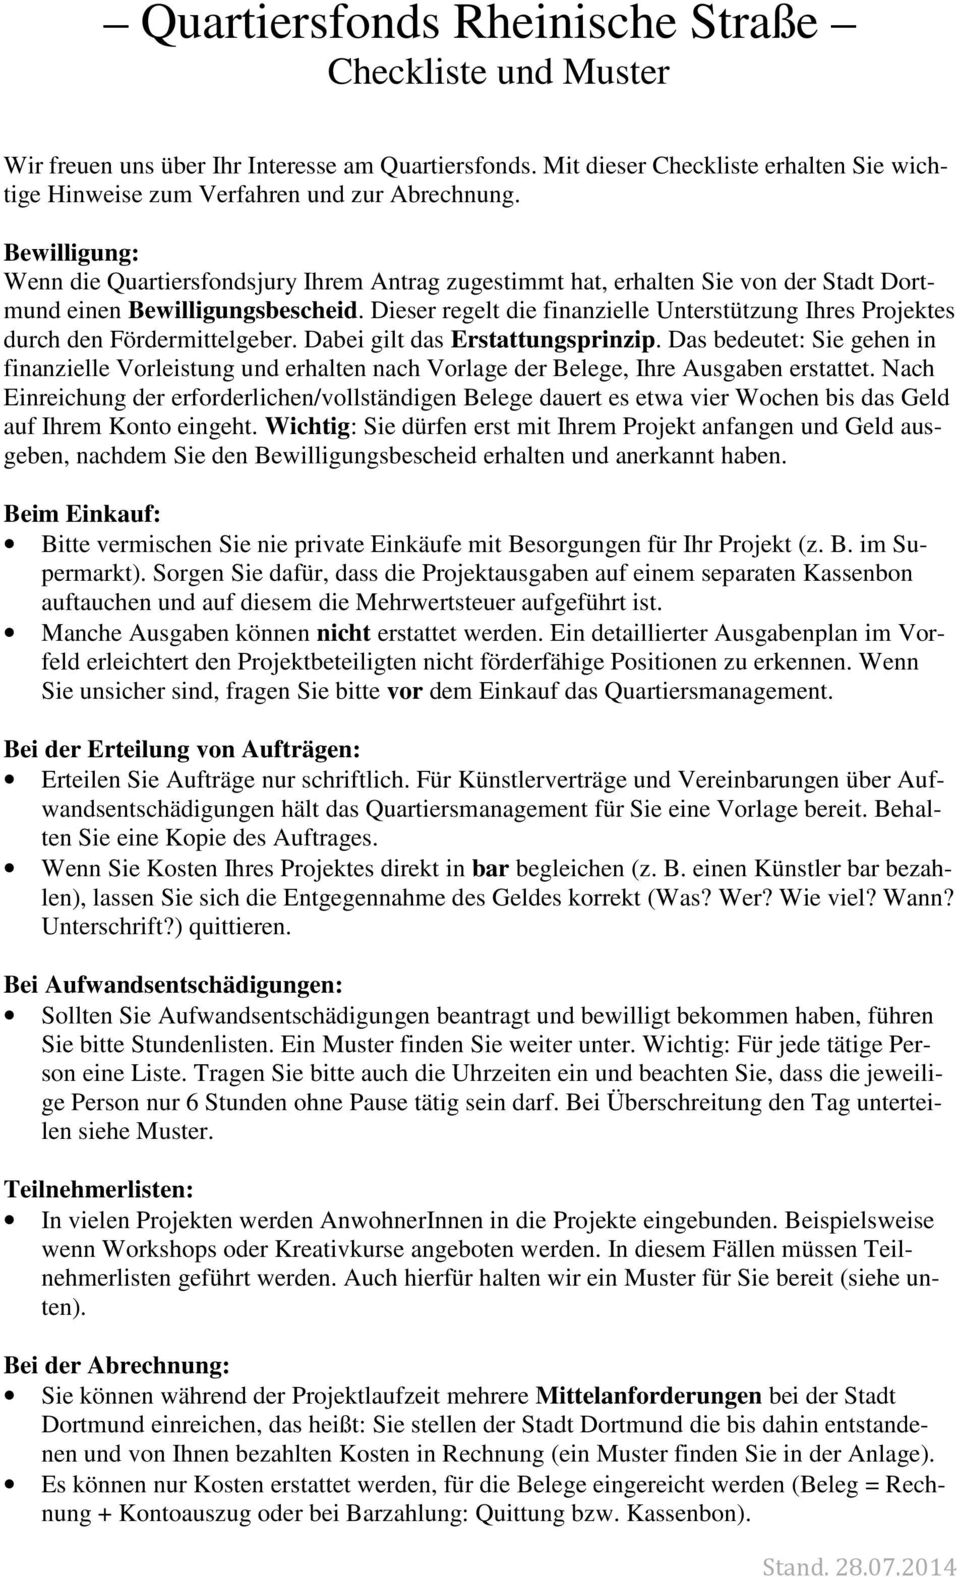 Quartiersfonds Rheinische Straße Checkliste Und Muster Pdf